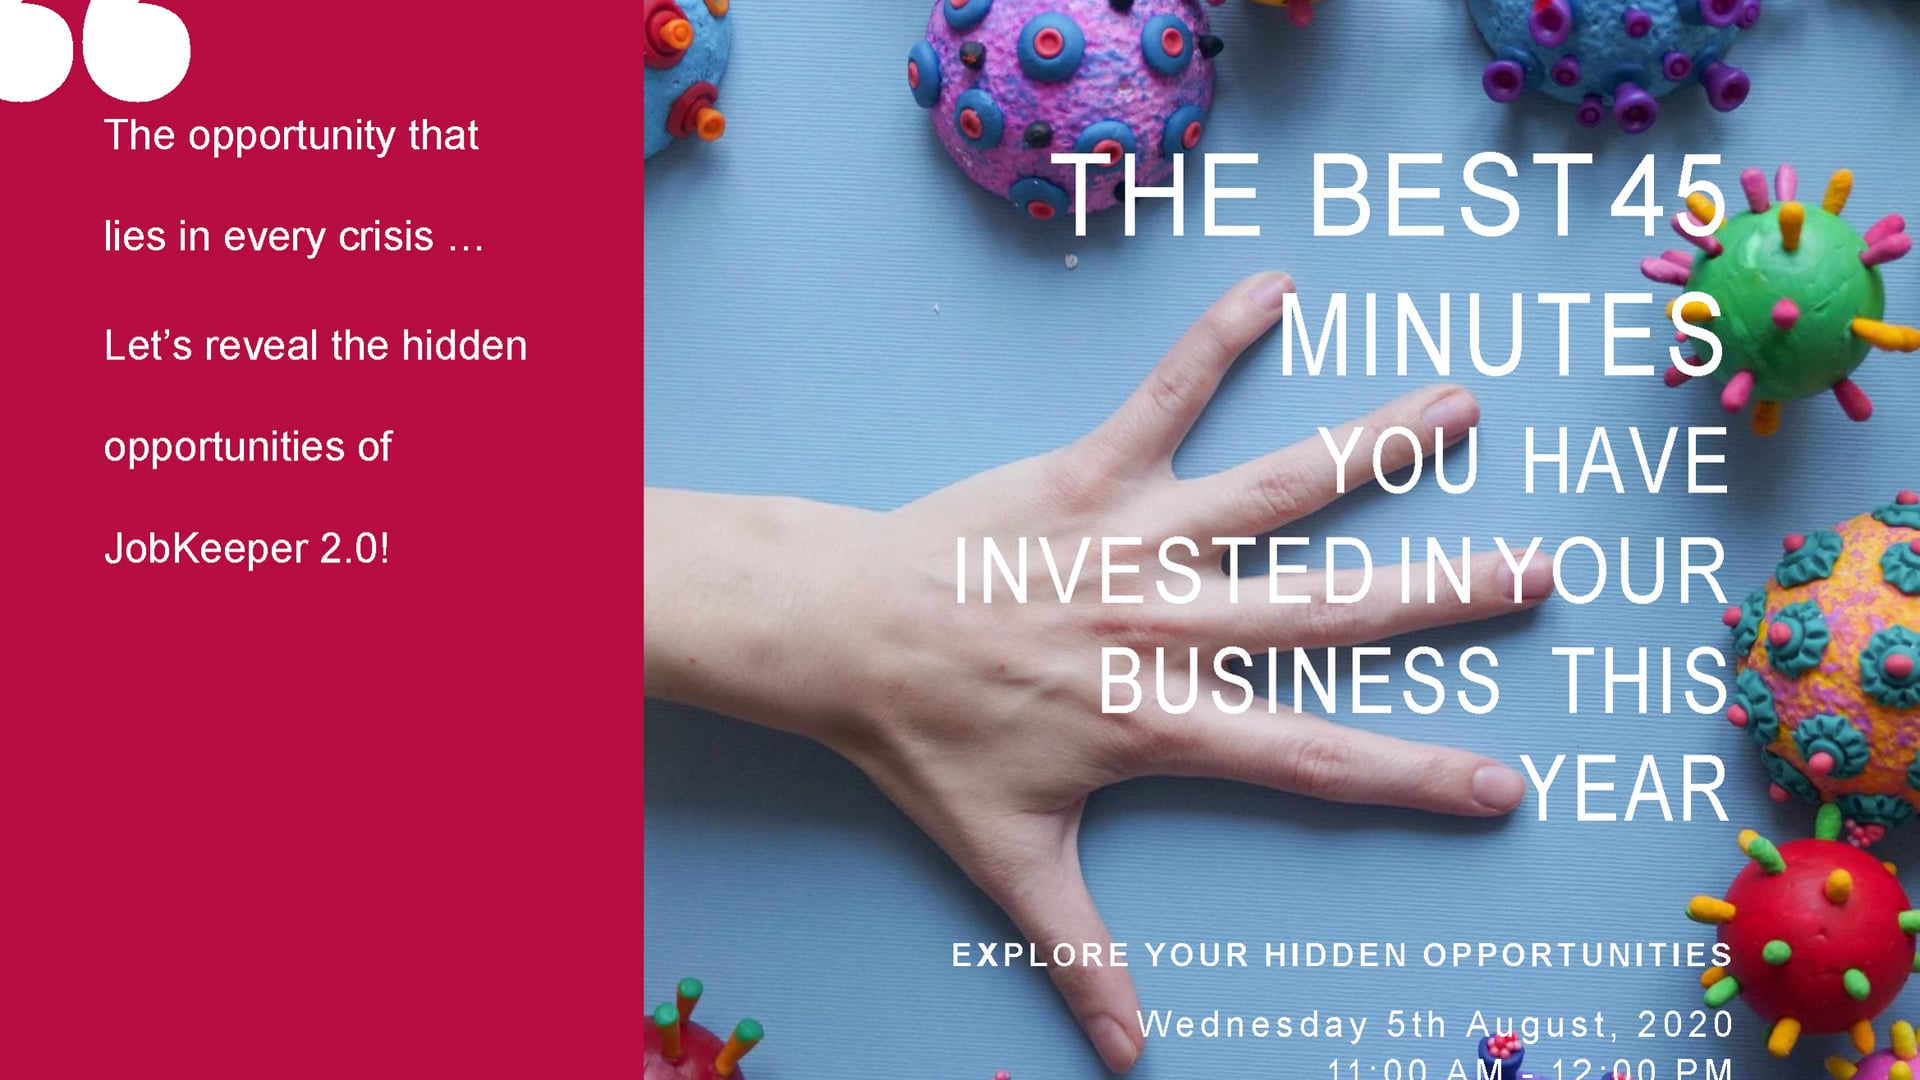 Your Hidden Opportunities of JobKeeper 2.0